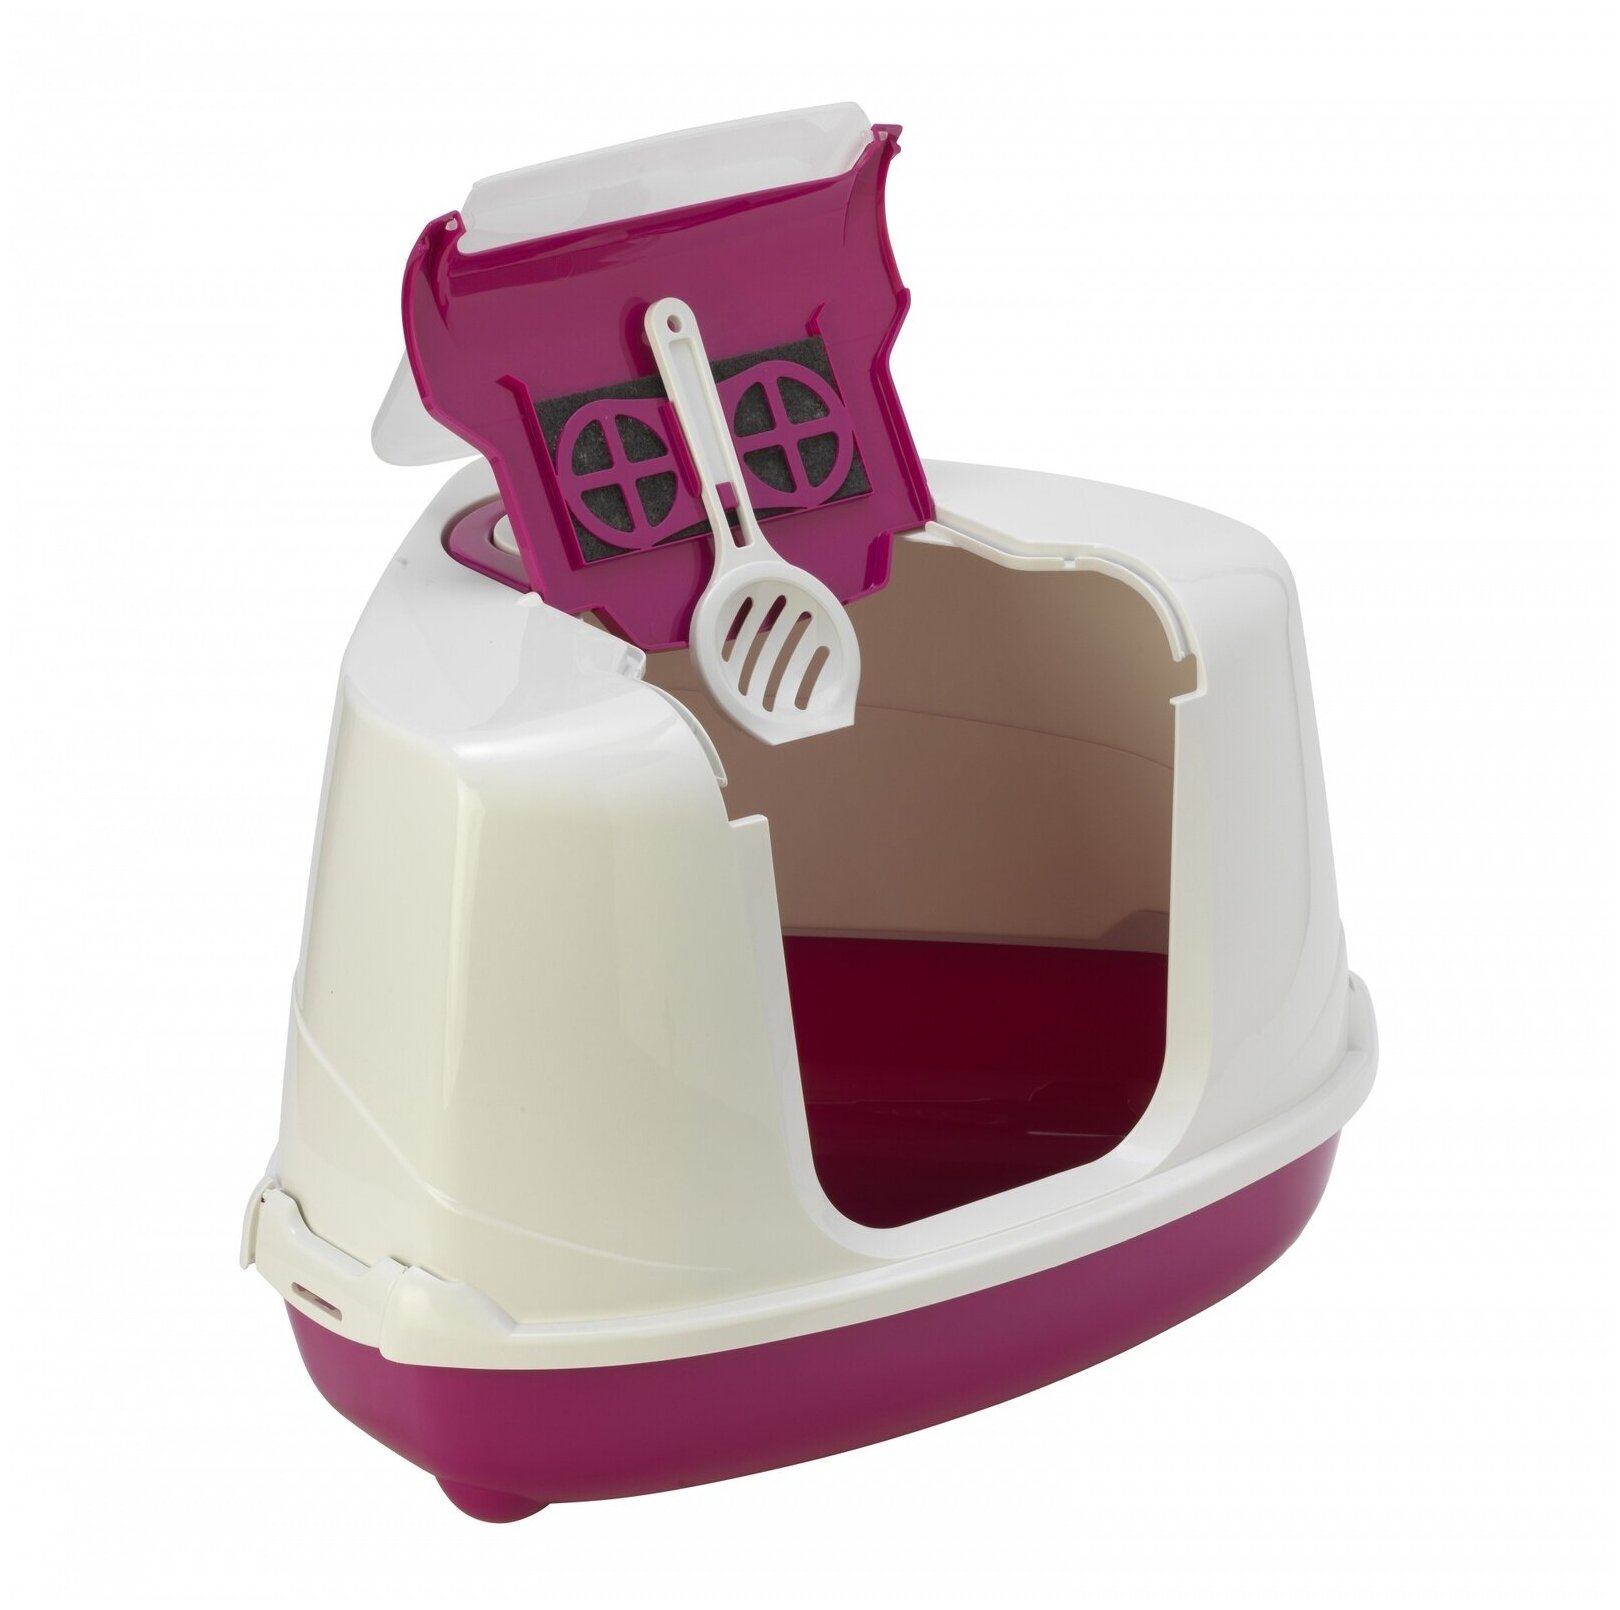 Moderna Туалет-домик угловой Flip с угольным фильтром, 55х45х38см, ярко-розовый, 1,6 кг